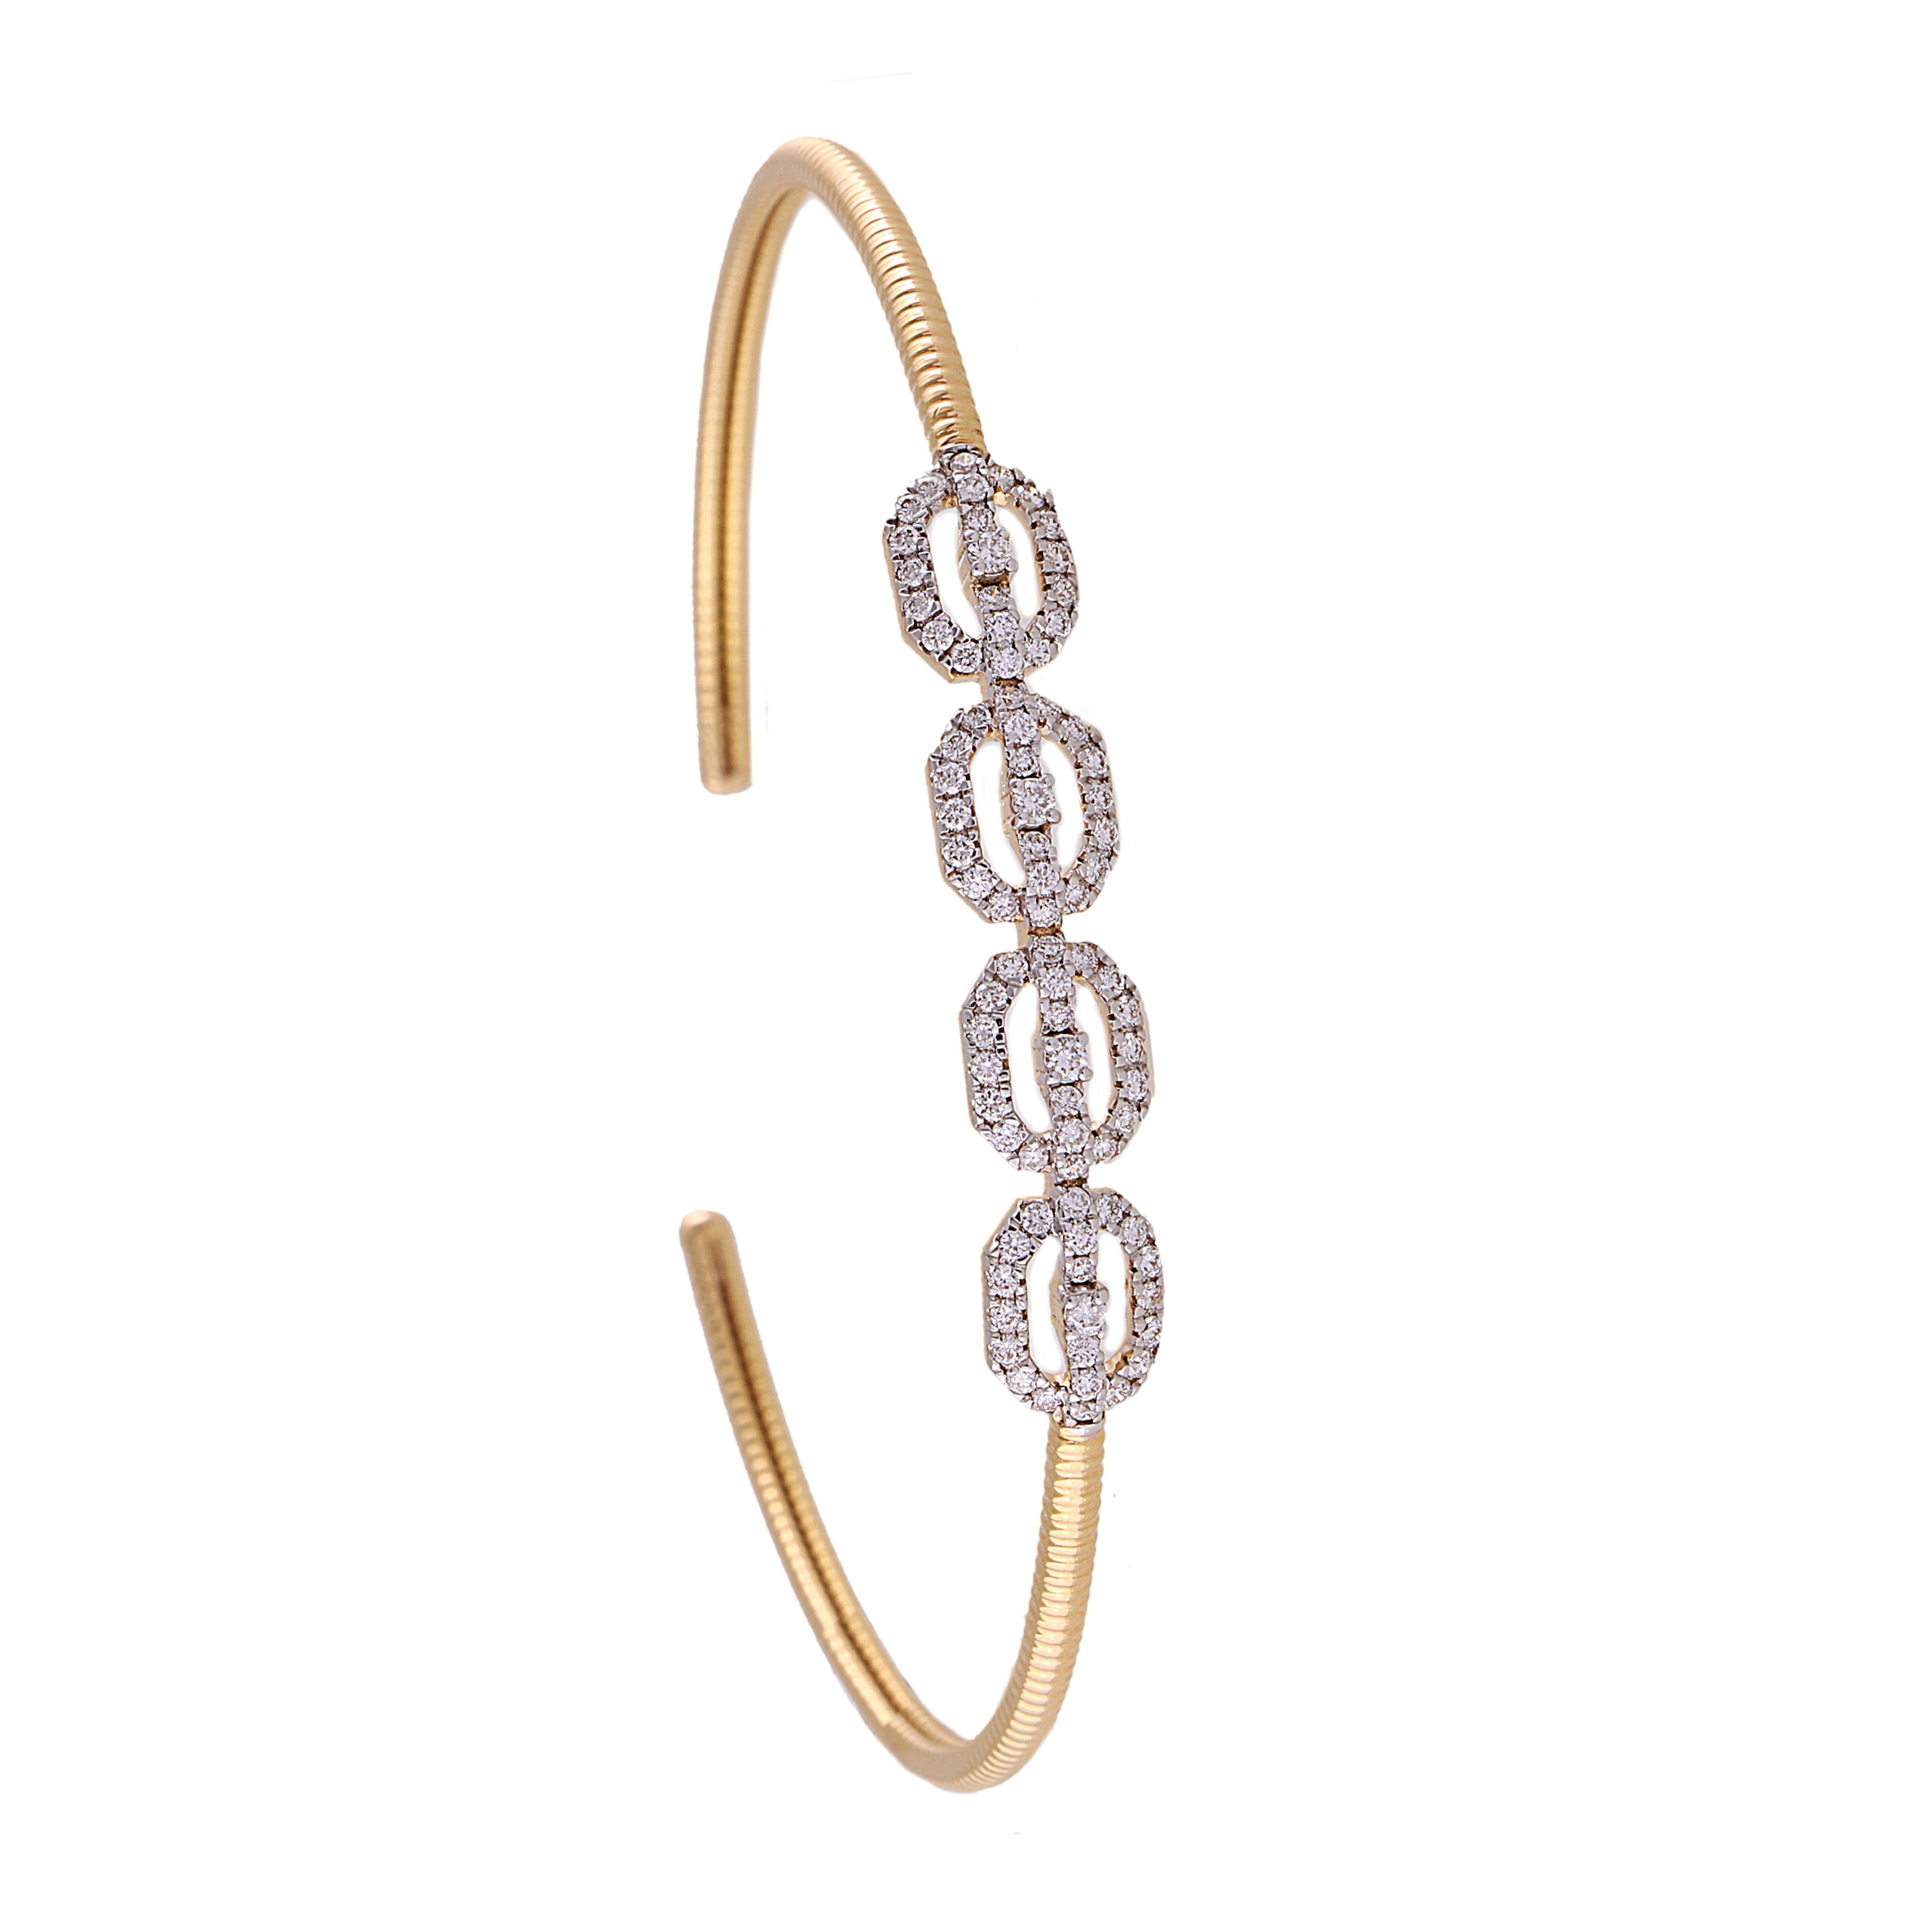 Gold open bracelet by Wynona | Wynona